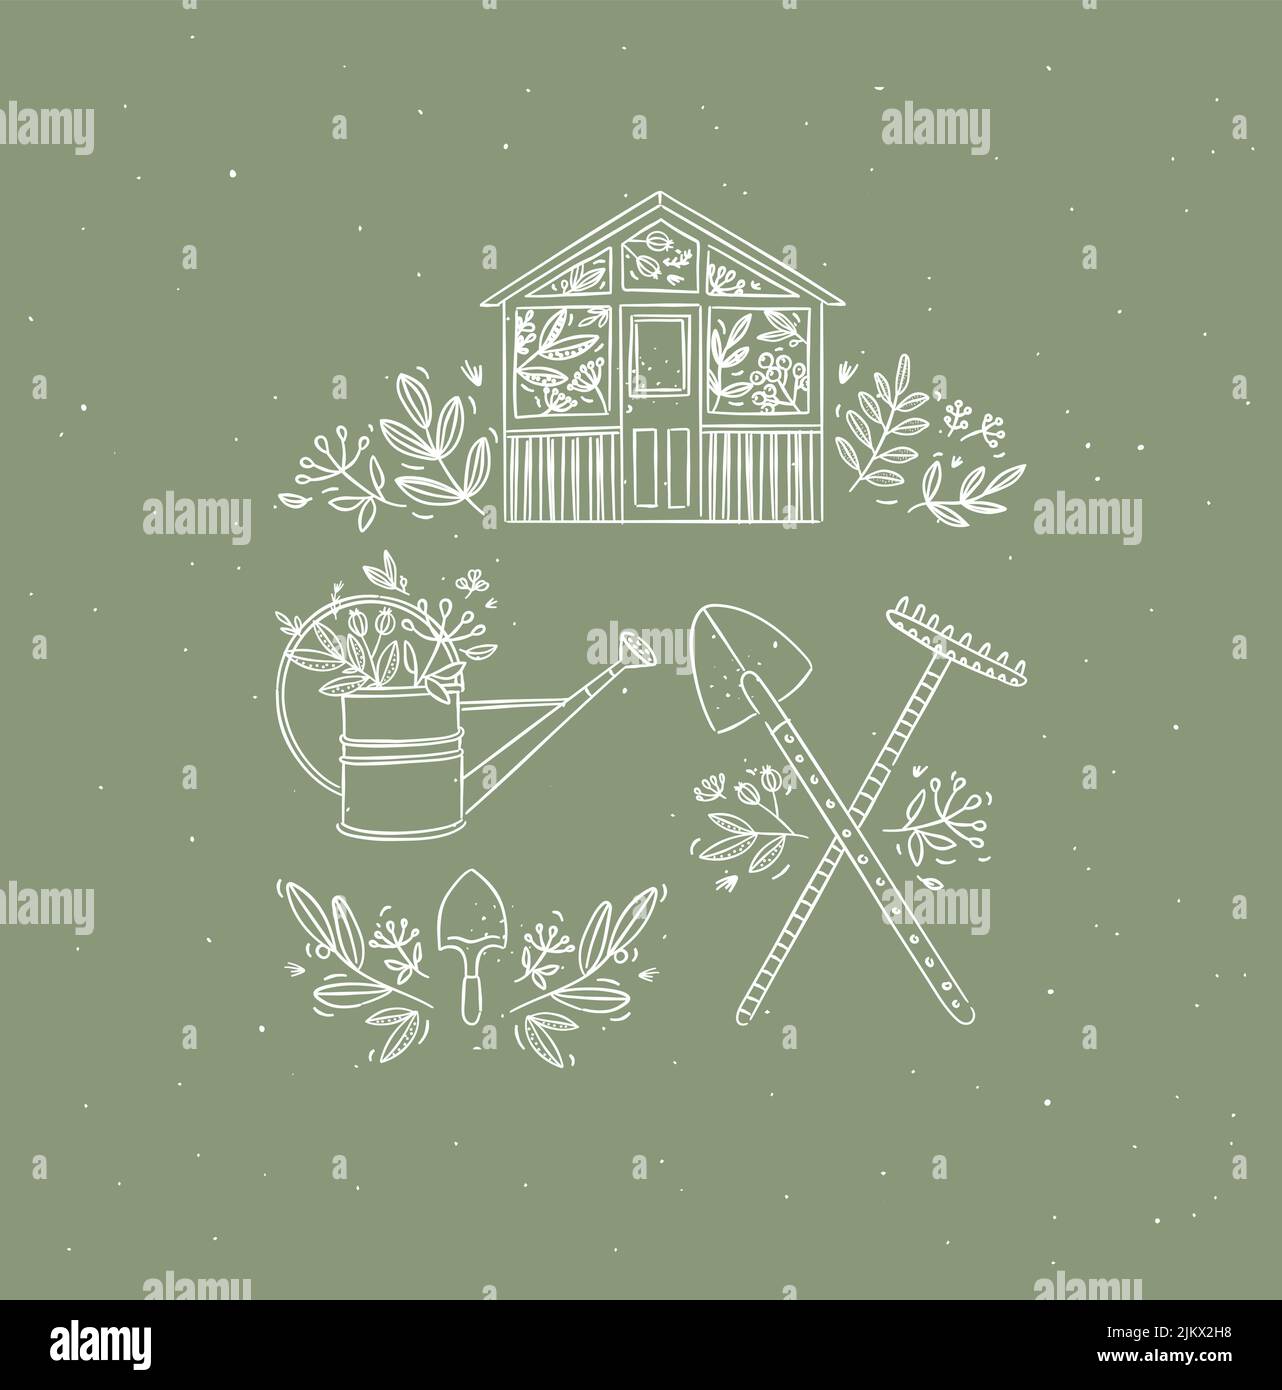 Dorf Sammlung von Ikonen Haus, Gartengeräte, Schaufel, Rechen, Gießkanne Zeichnung in Grafikstil auf grünem Hintergrund Stock Vektor